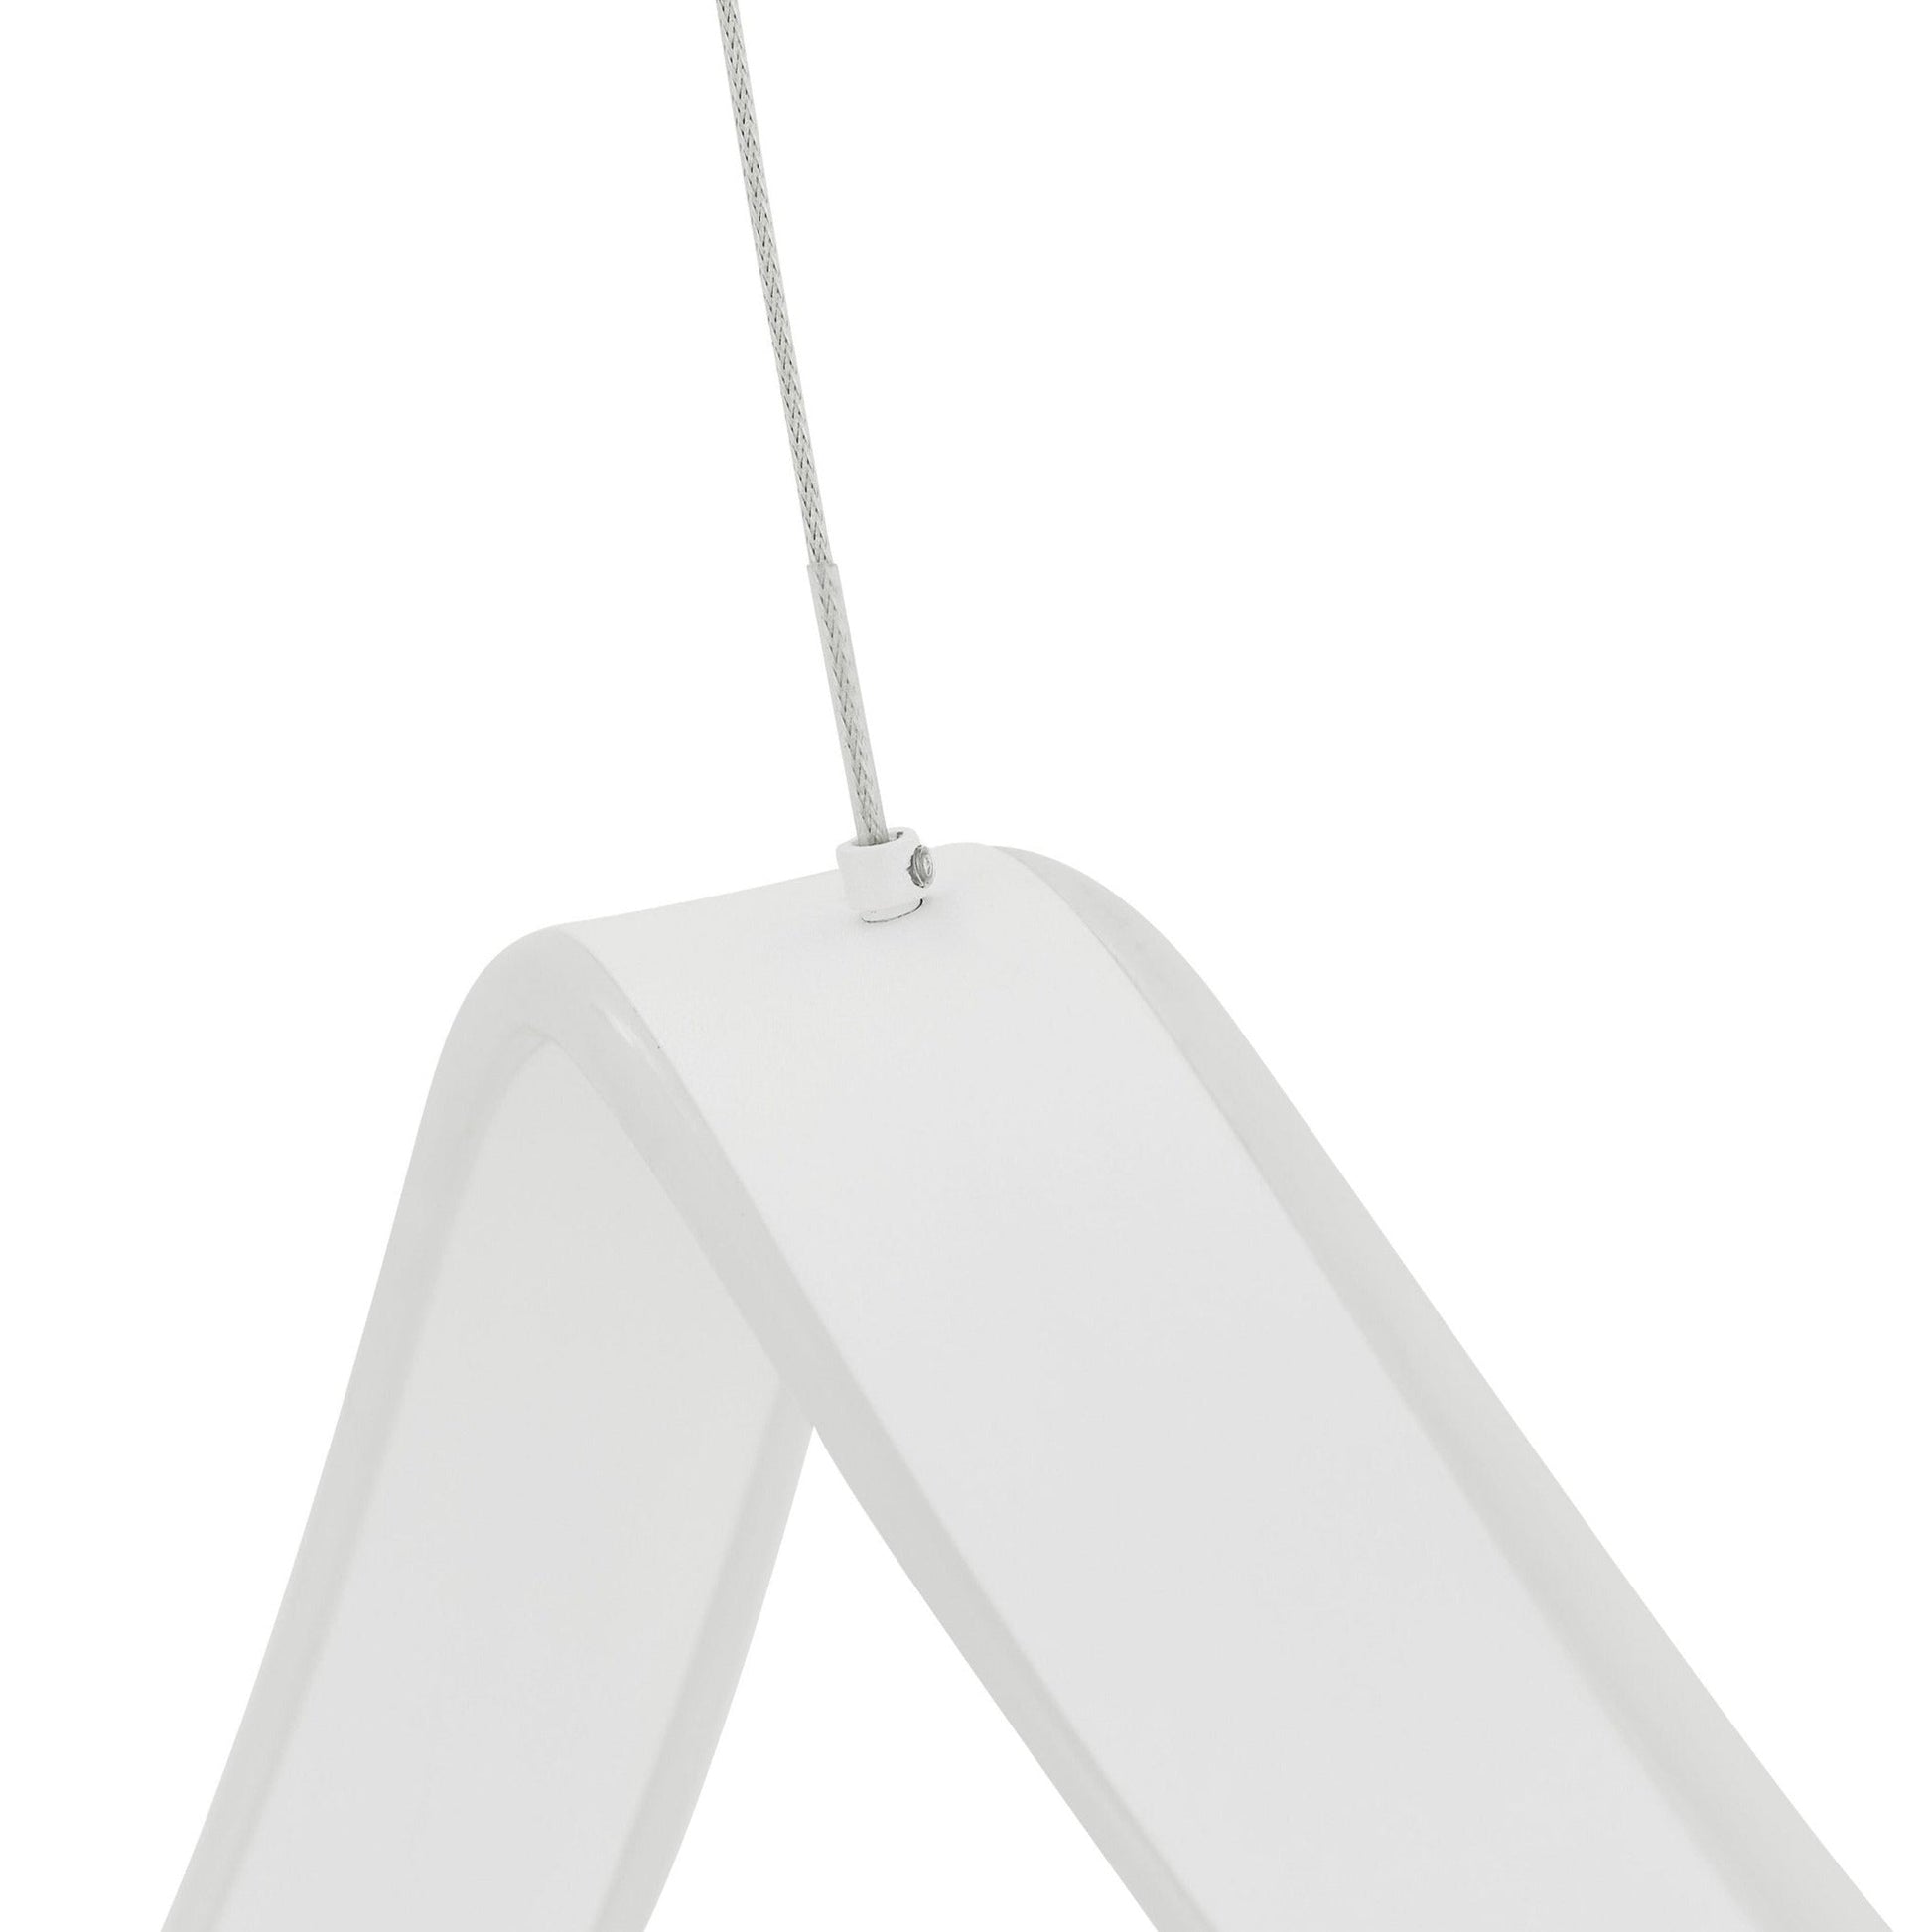 Copenhagen LED Chandelier // White